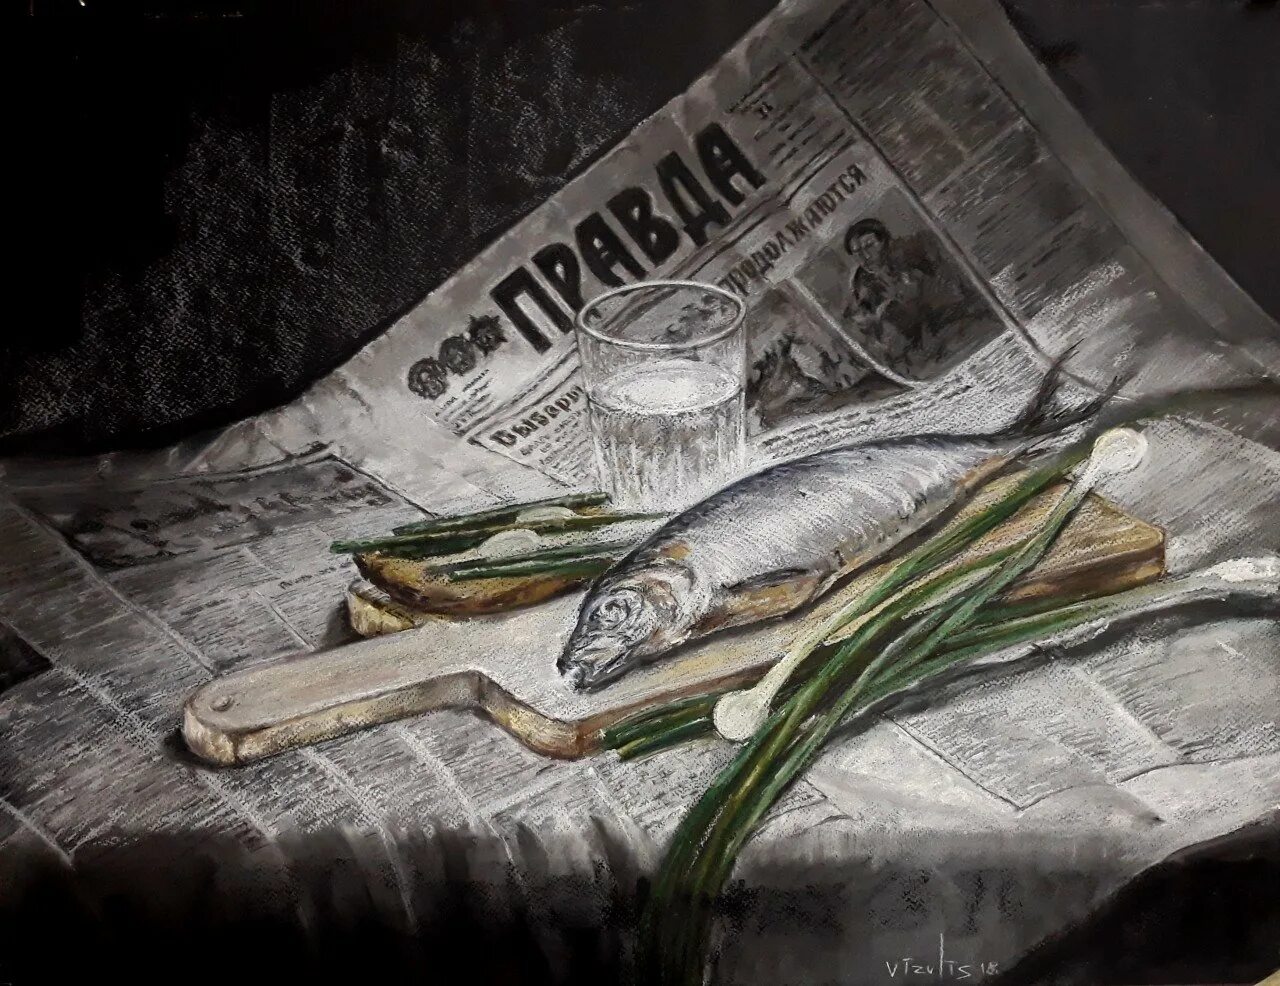 Здесь рыбу заворачивали. Натюрморт с рыбой. Селедка на газете картина. Натюрморт с рыбой и газетой. Натюрморт с селедкой.